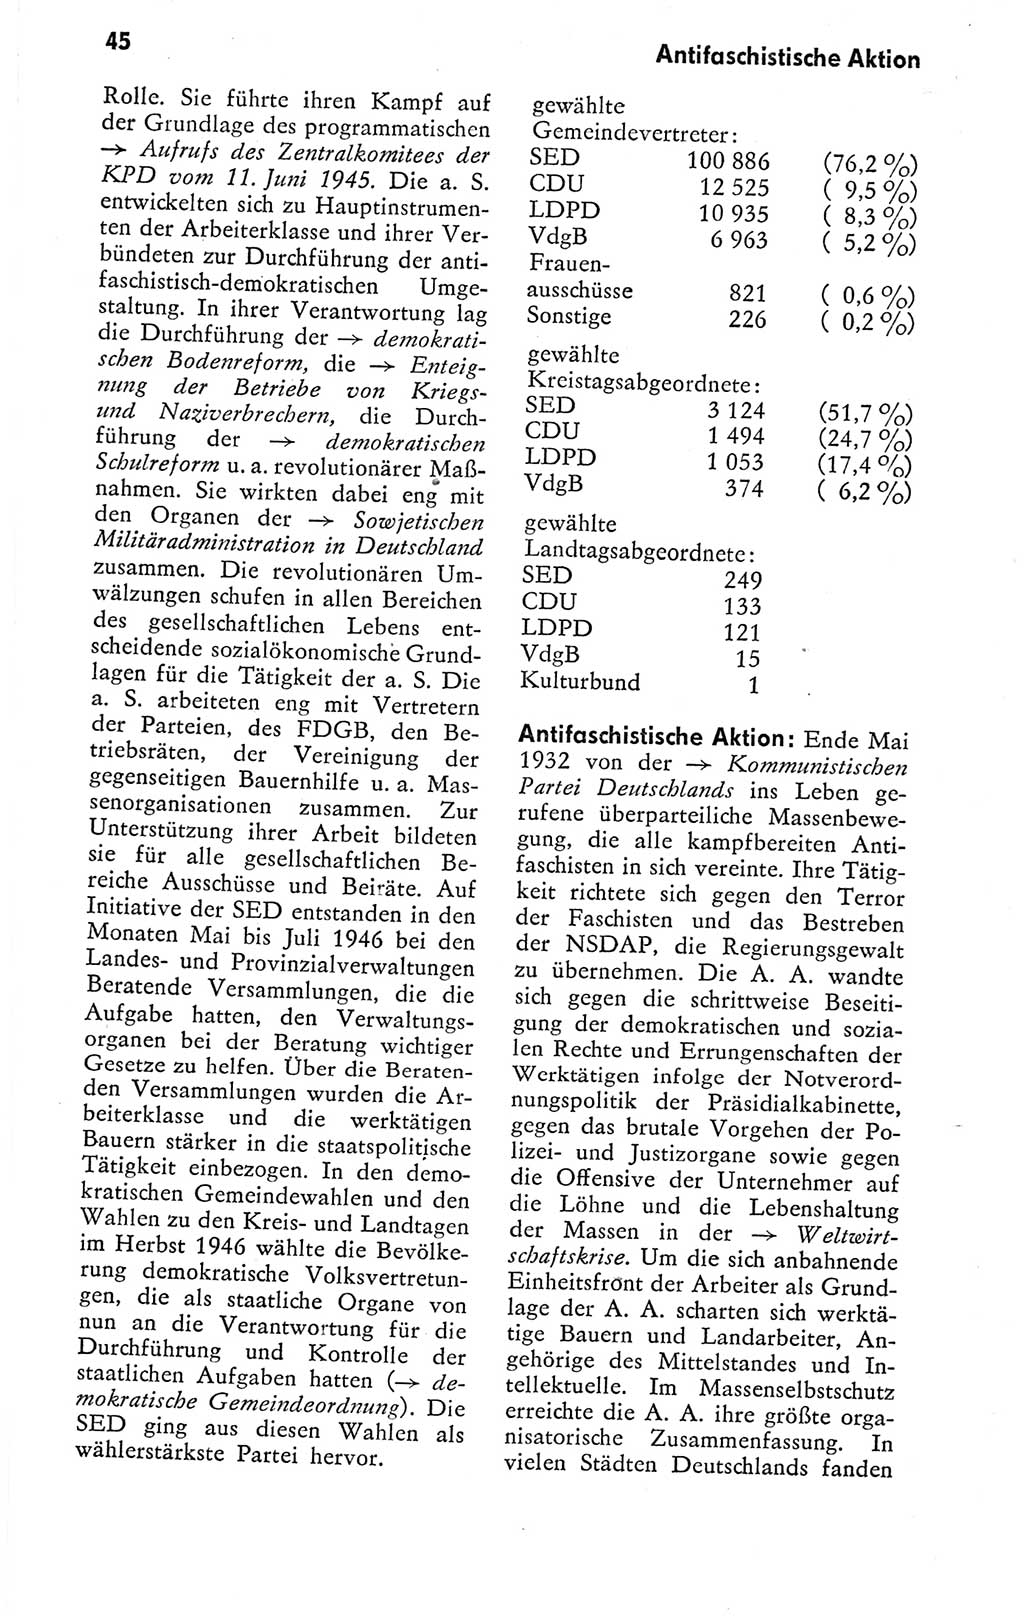 Kleines politisches Wörterbuch [Deutsche Demokratische Republik (DDR)] 1978, Seite 45 (Kl. pol. Wb. DDR 1978, S. 45)